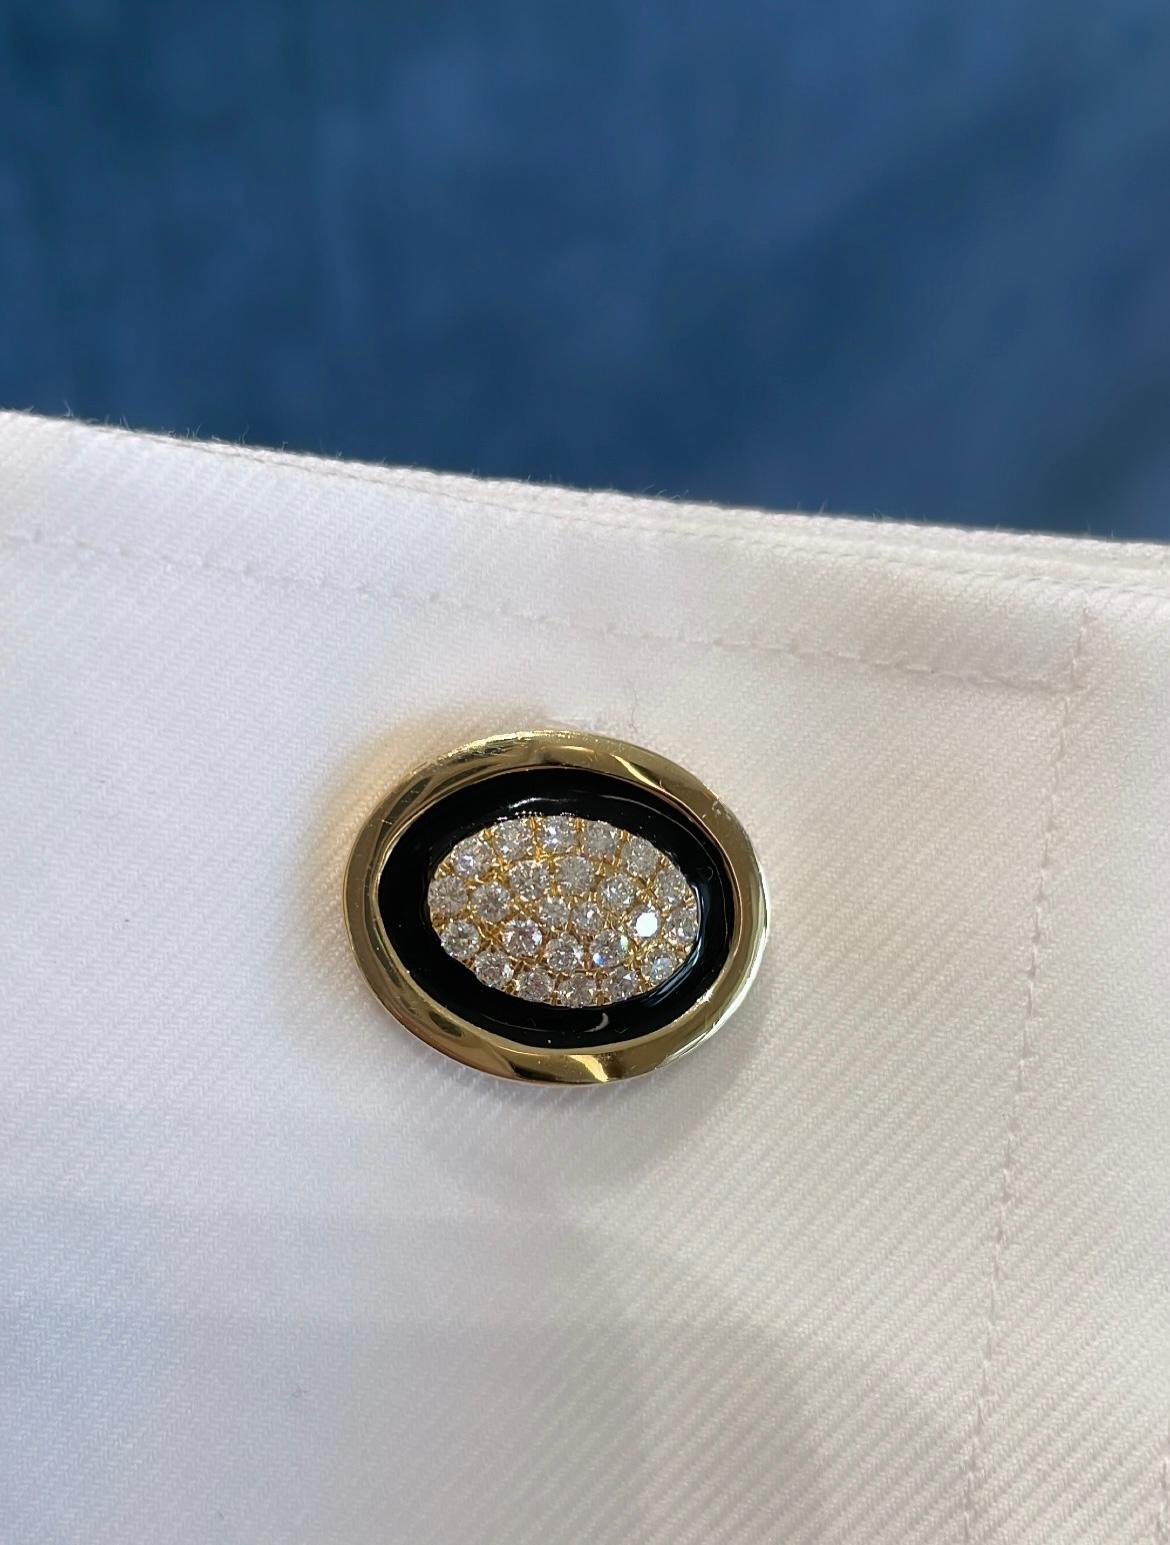 Ces boutons de manchette sont ornés de 48 diamants totalisant 1,18 carat, entourés d'onyx noir et d'or jaune, créant ainsi un équilibre parfait entre couleur et brillance. Ils sont très pointus et parfaits pour toutes les occasions. C'est un bouton